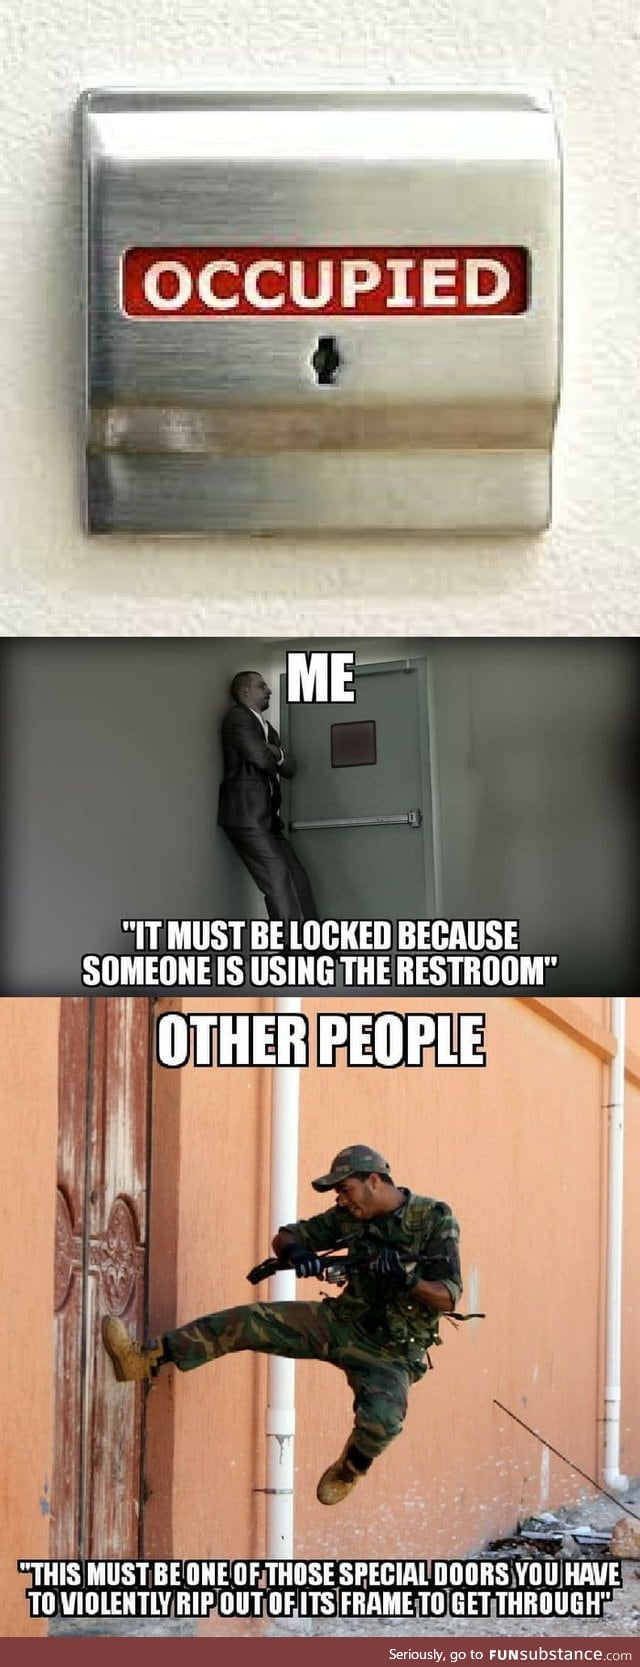 When a public restroom door is locked